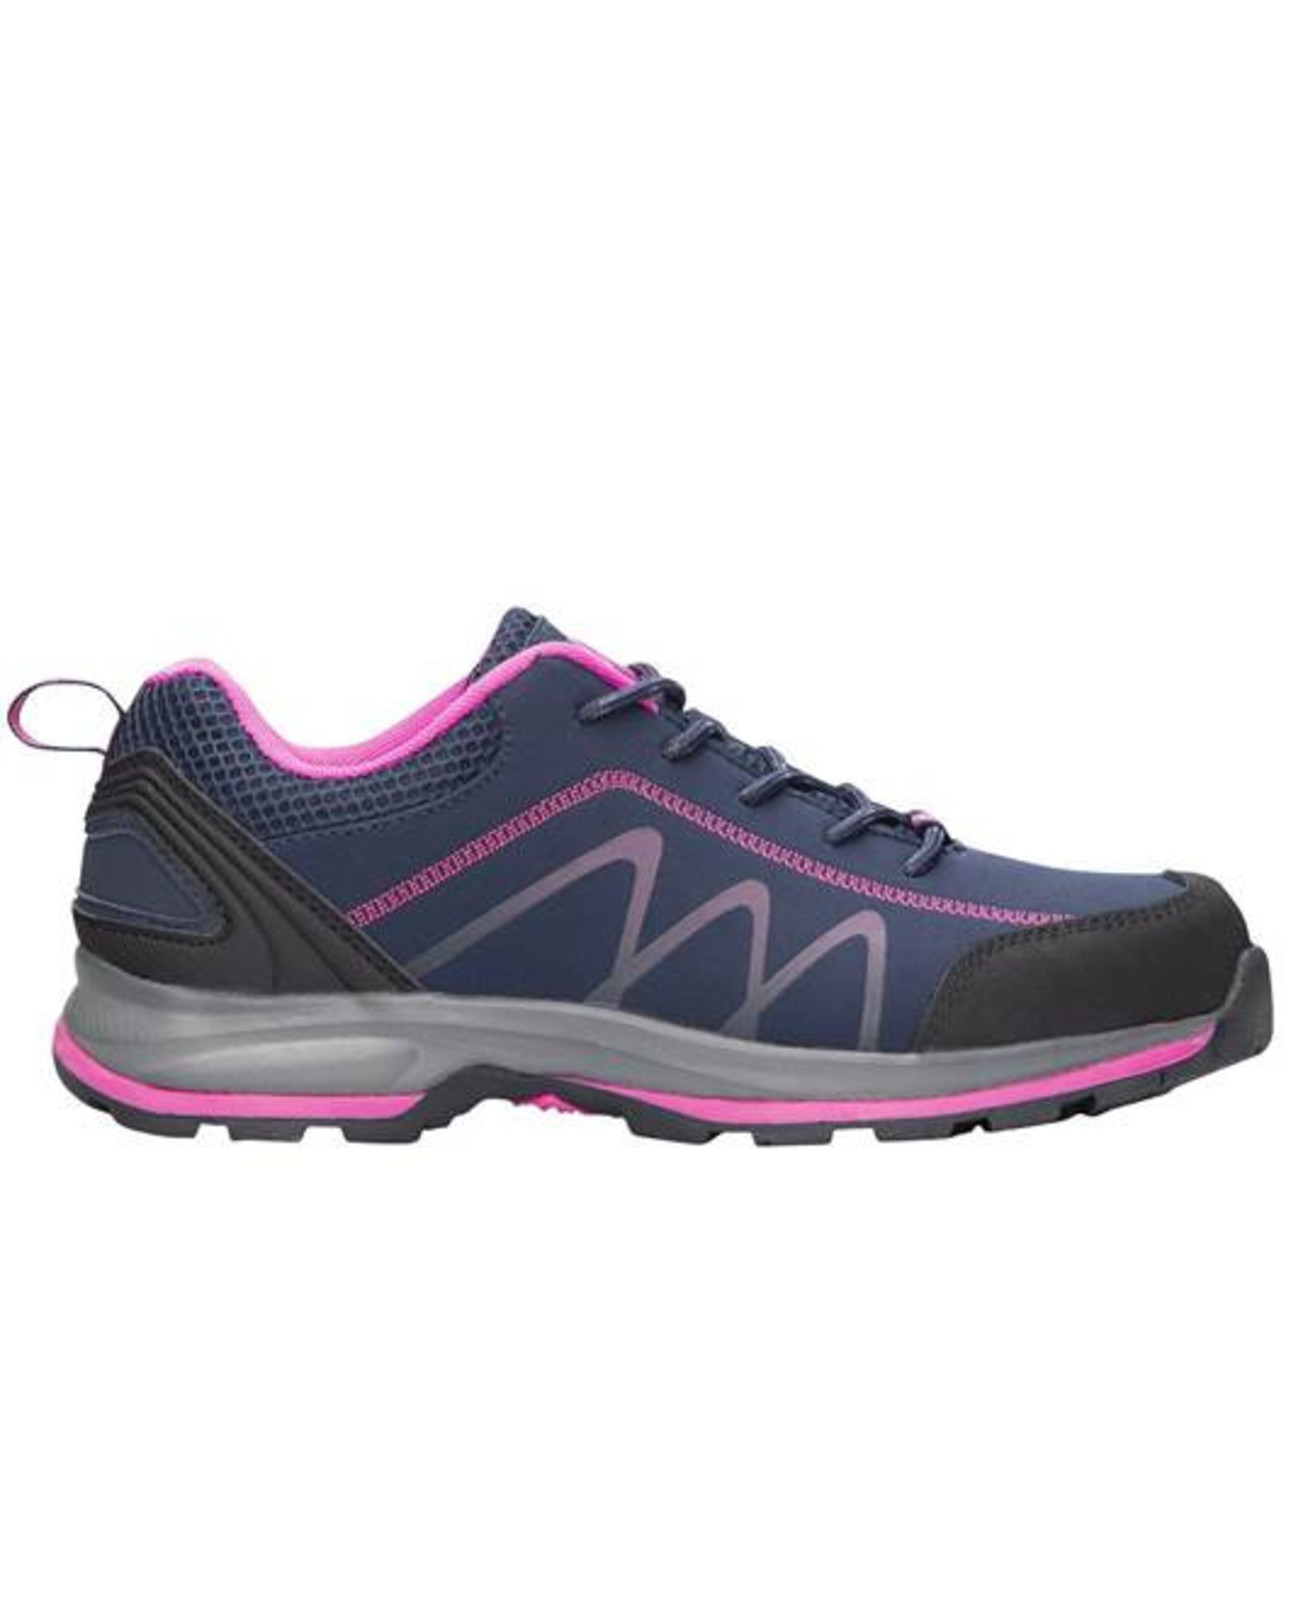 Dámska outdoor softshellová obuv Ardon Bloom - veľkosť: 40, farba: navy lila